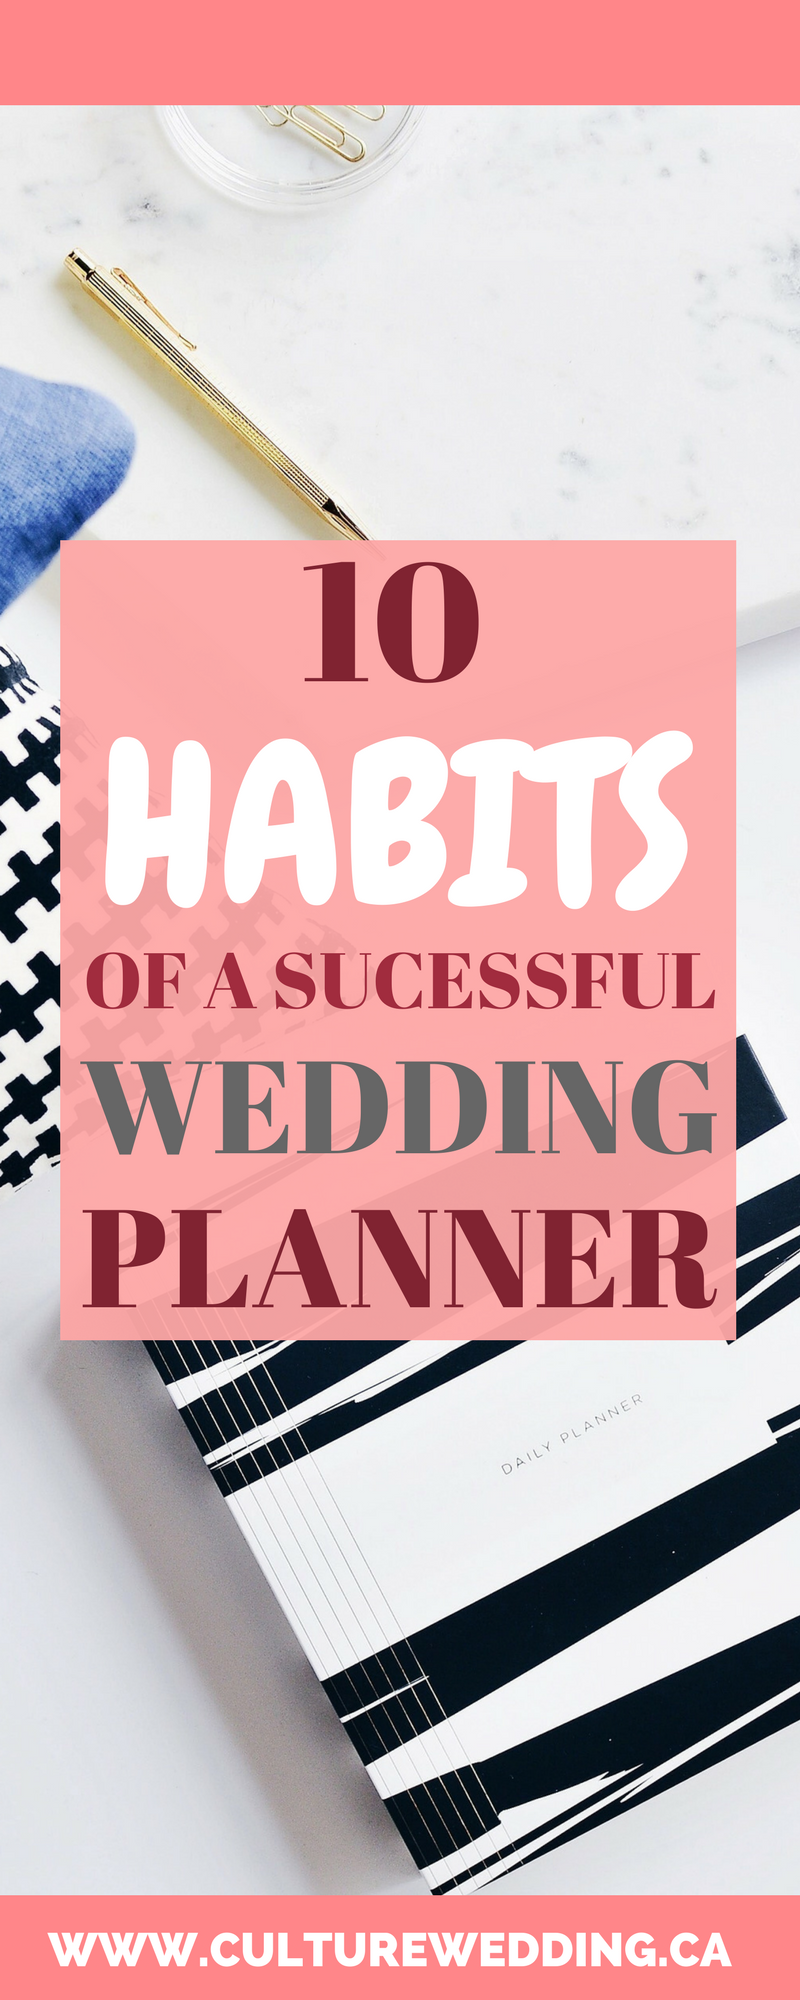 14 wedding Planner binder ideas